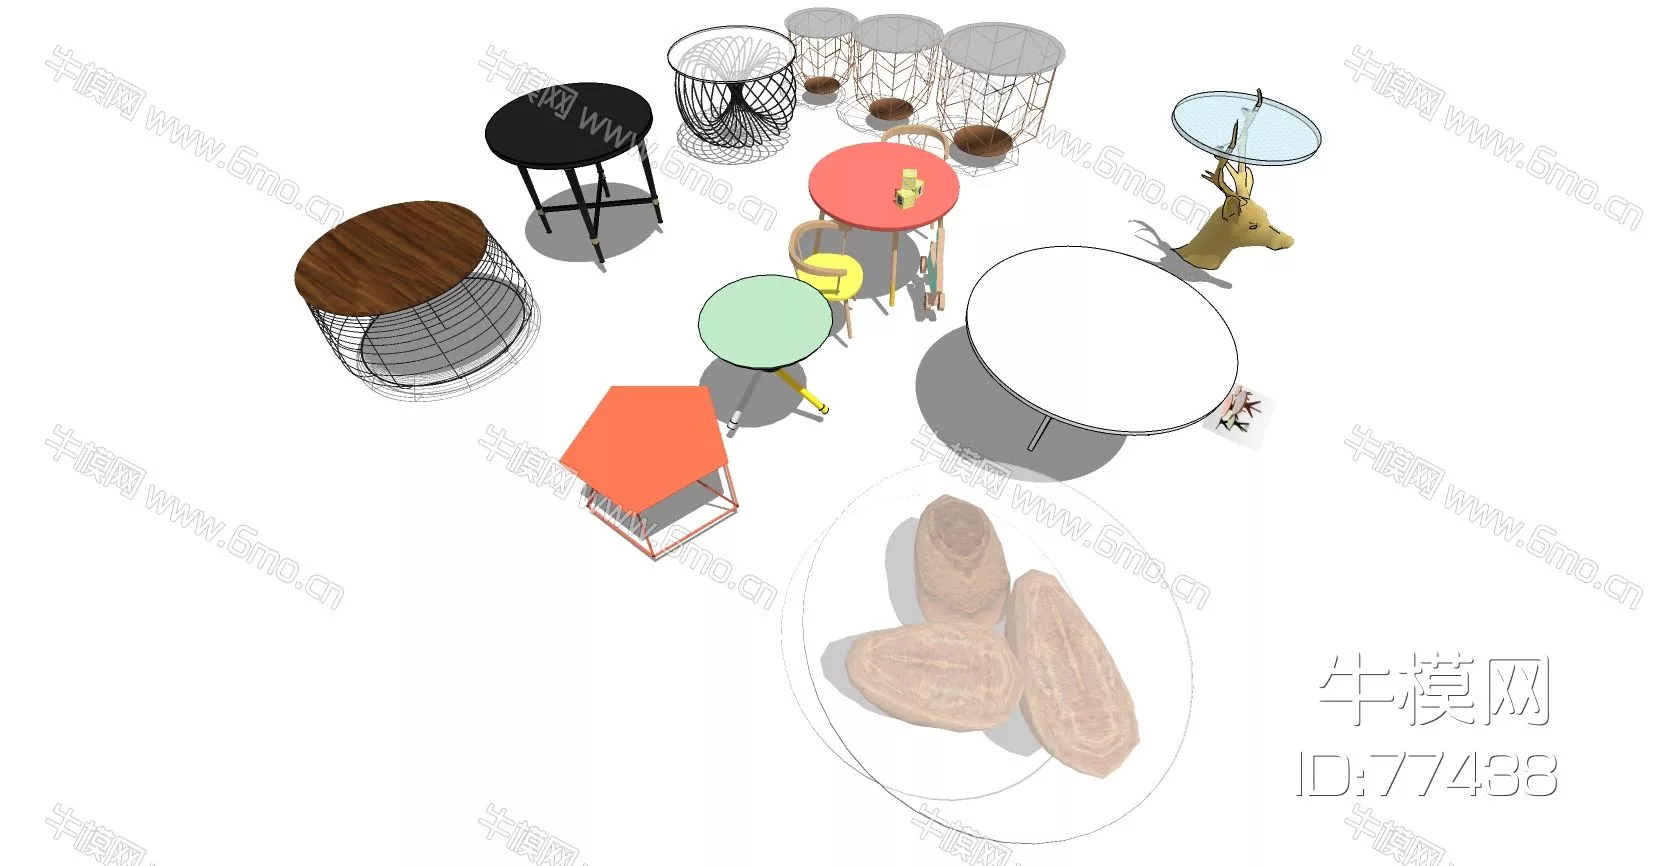 NORDIC SIDE TABLE - SKETCHUP 3D MODEL - ENSCAPE - 77438